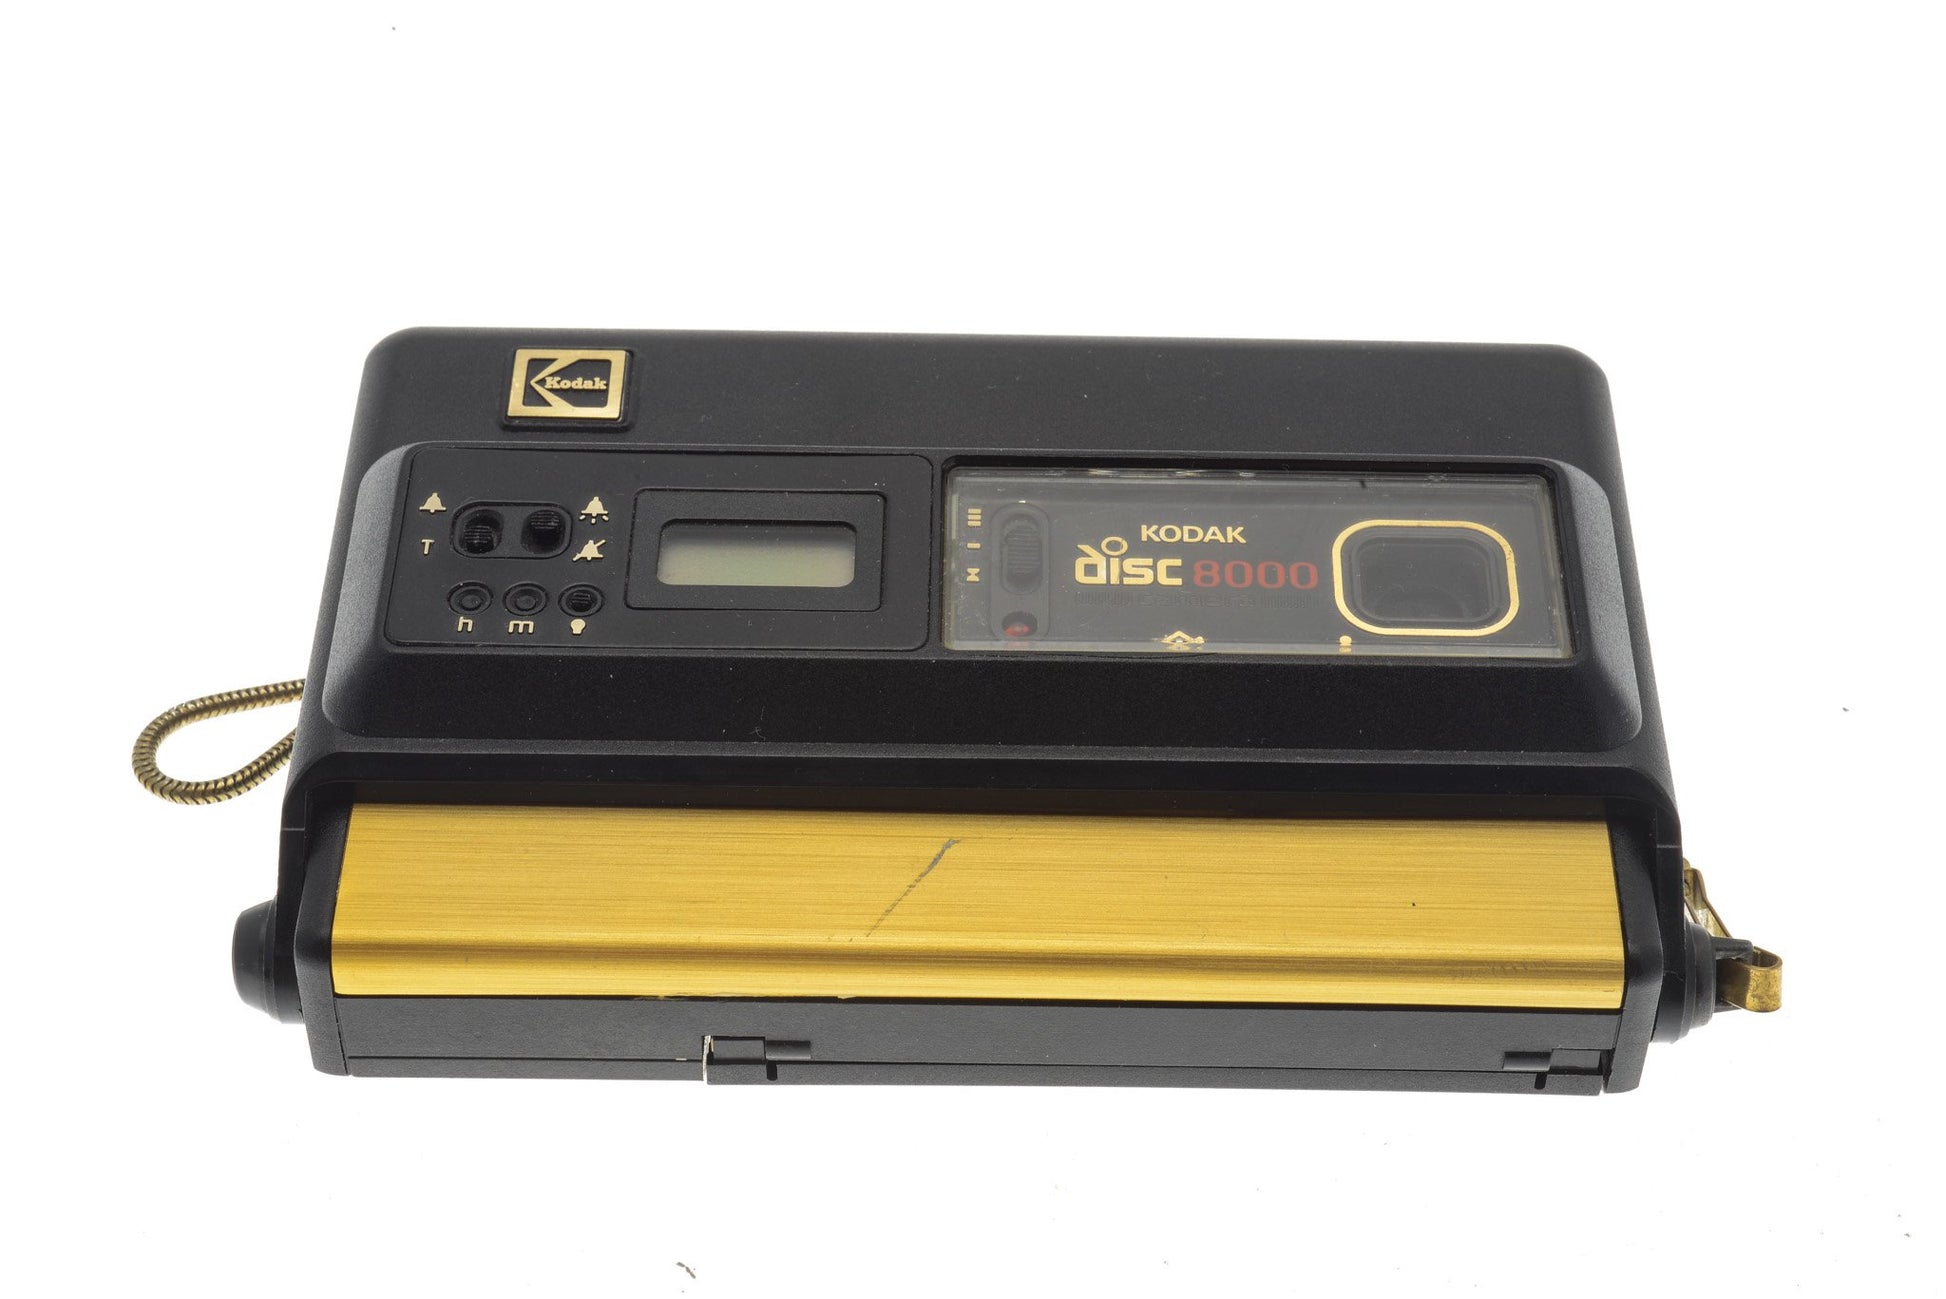 Kodak Disc 8000 - Camera